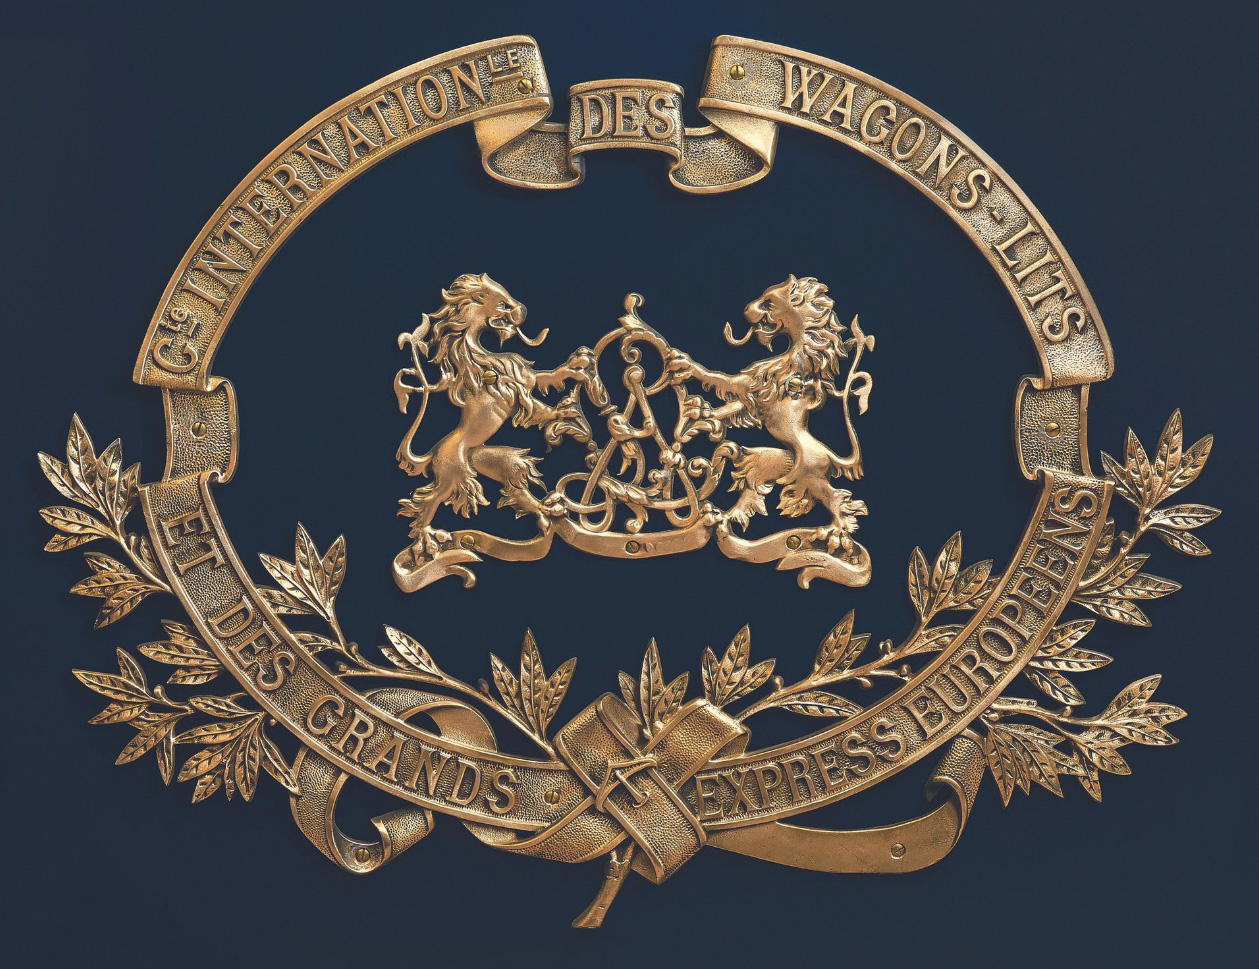 Emblème de la Compagnie des wagons-lits en bronze poli, figurant le monogramme «WL» encadré de deux lions héraldiques, 1929, 63 x 82 cm. P